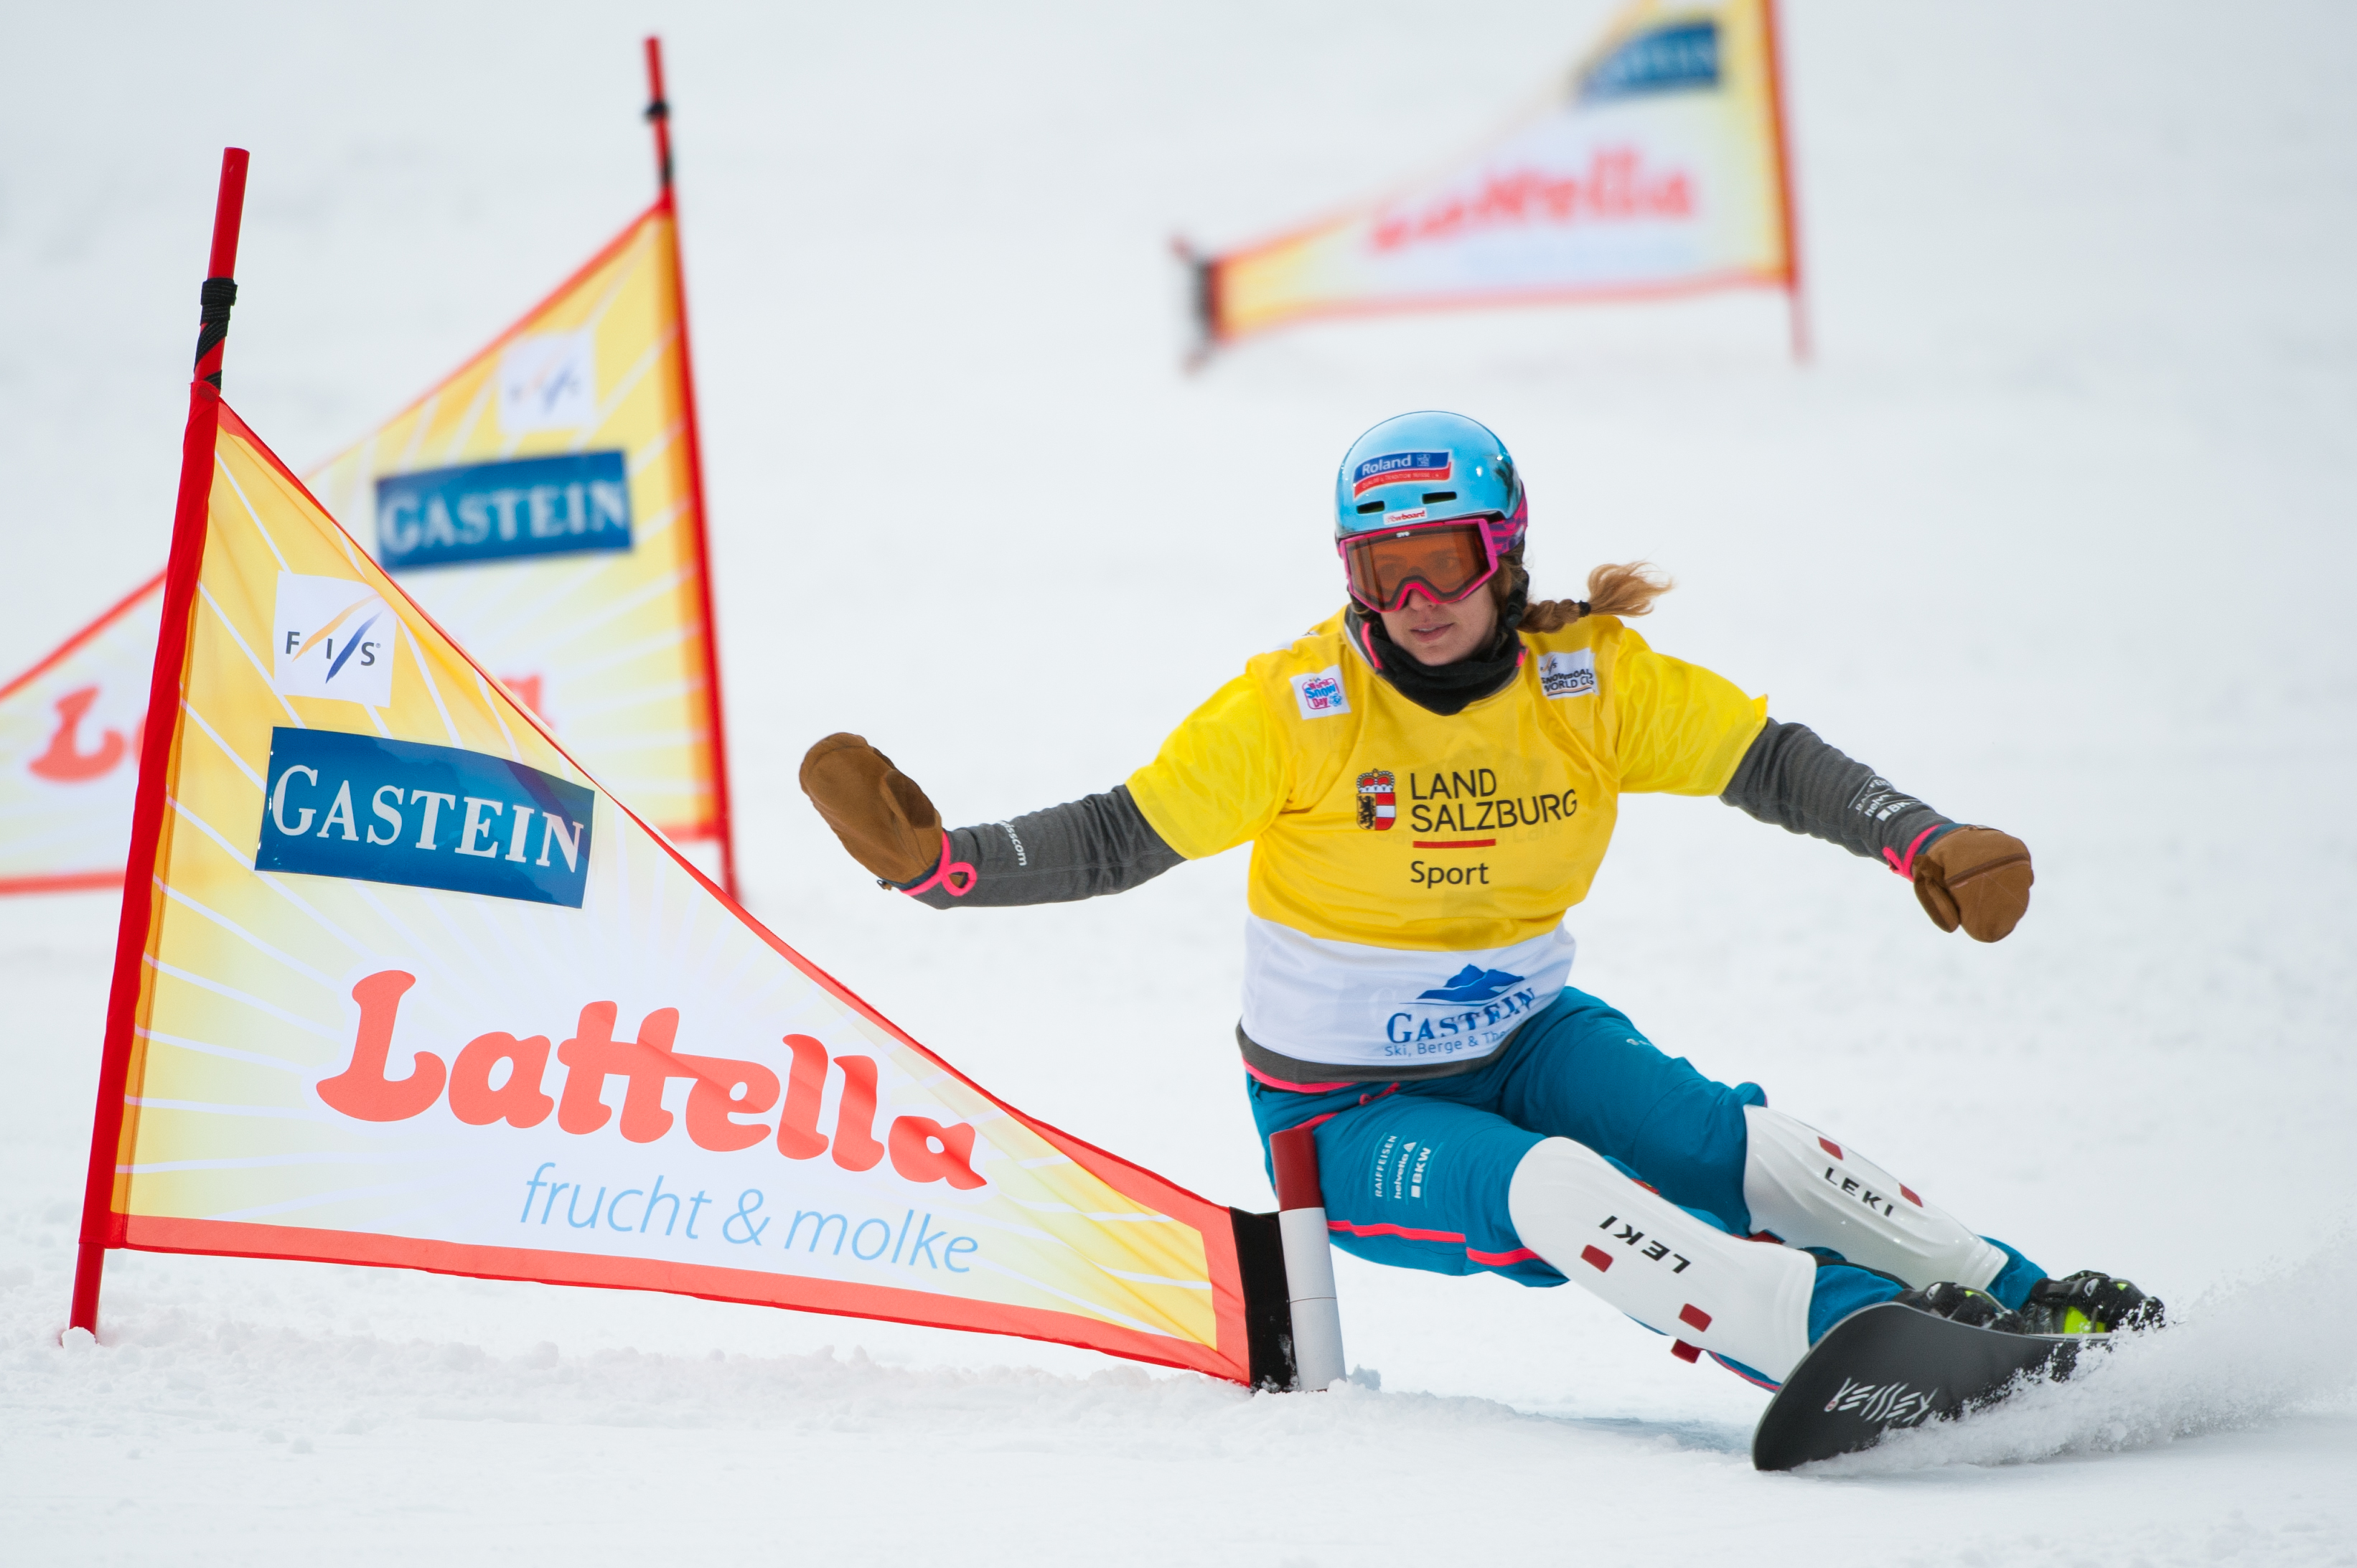 Patrizia Kummer carvt eine Heelsidekurve während des Weltcuprennens in Bad Gestein Anfang Januar 2016 in Richtung Ziel.